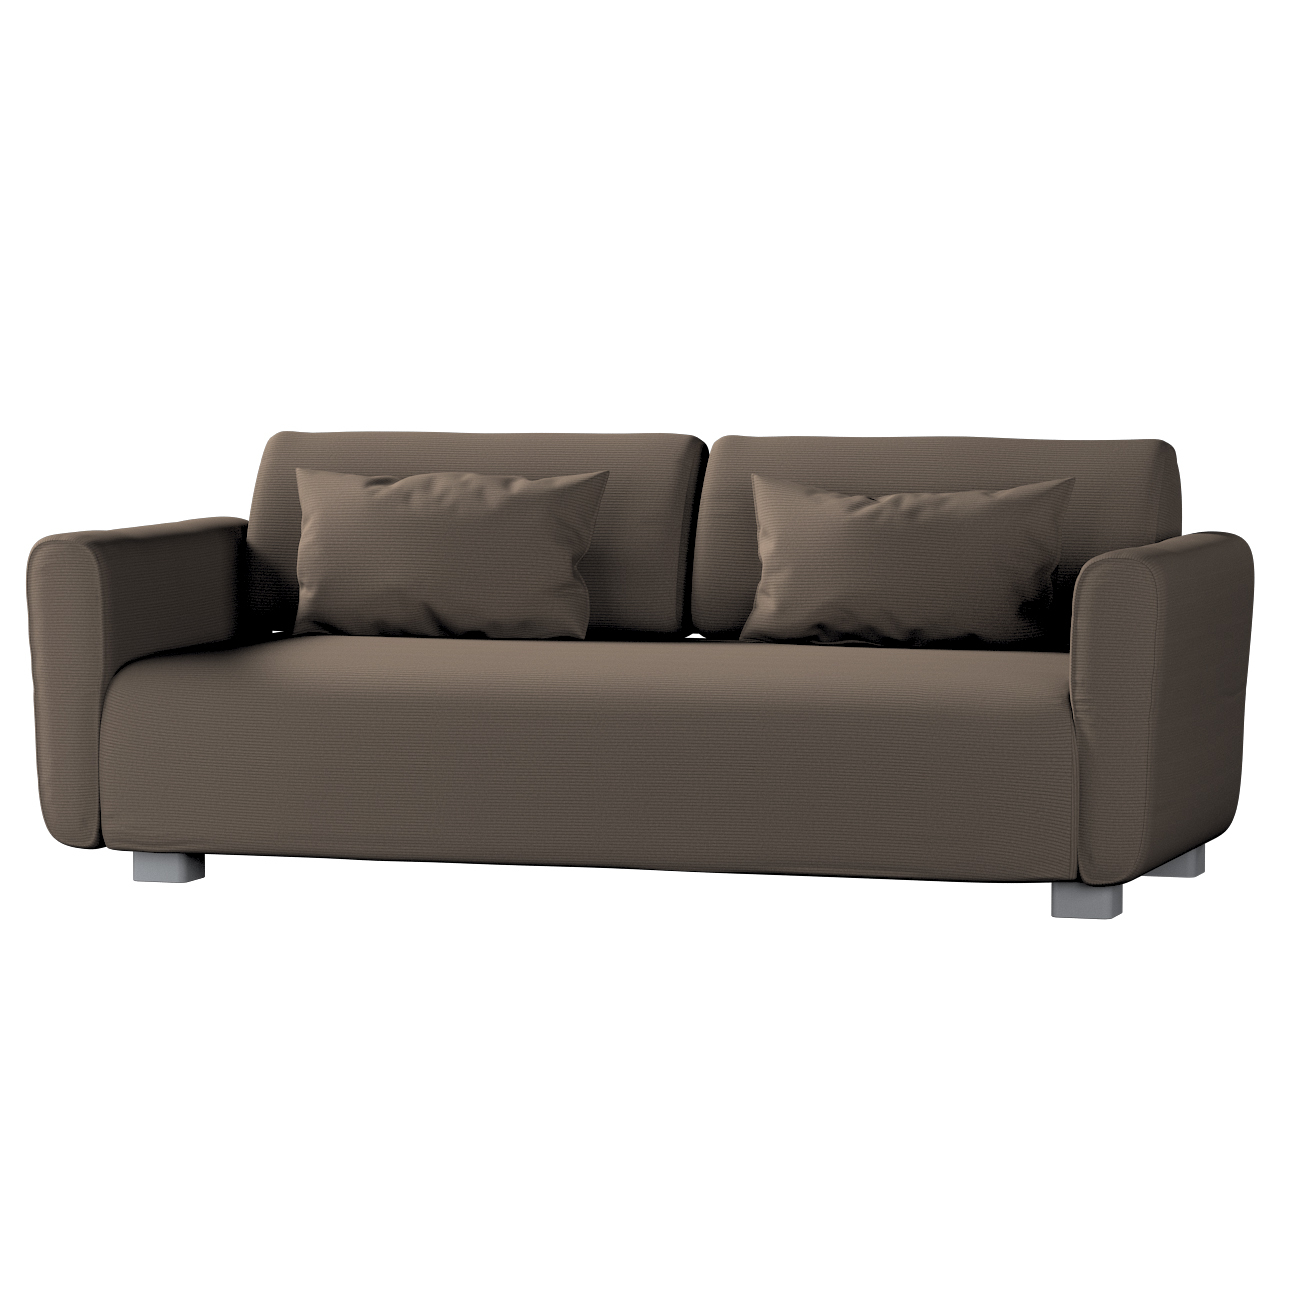 Bezug für Mysinge 2-Sitzer Sofa, braun, Sofabezug Mysinge 2-Sitzer, Manches günstig online kaufen